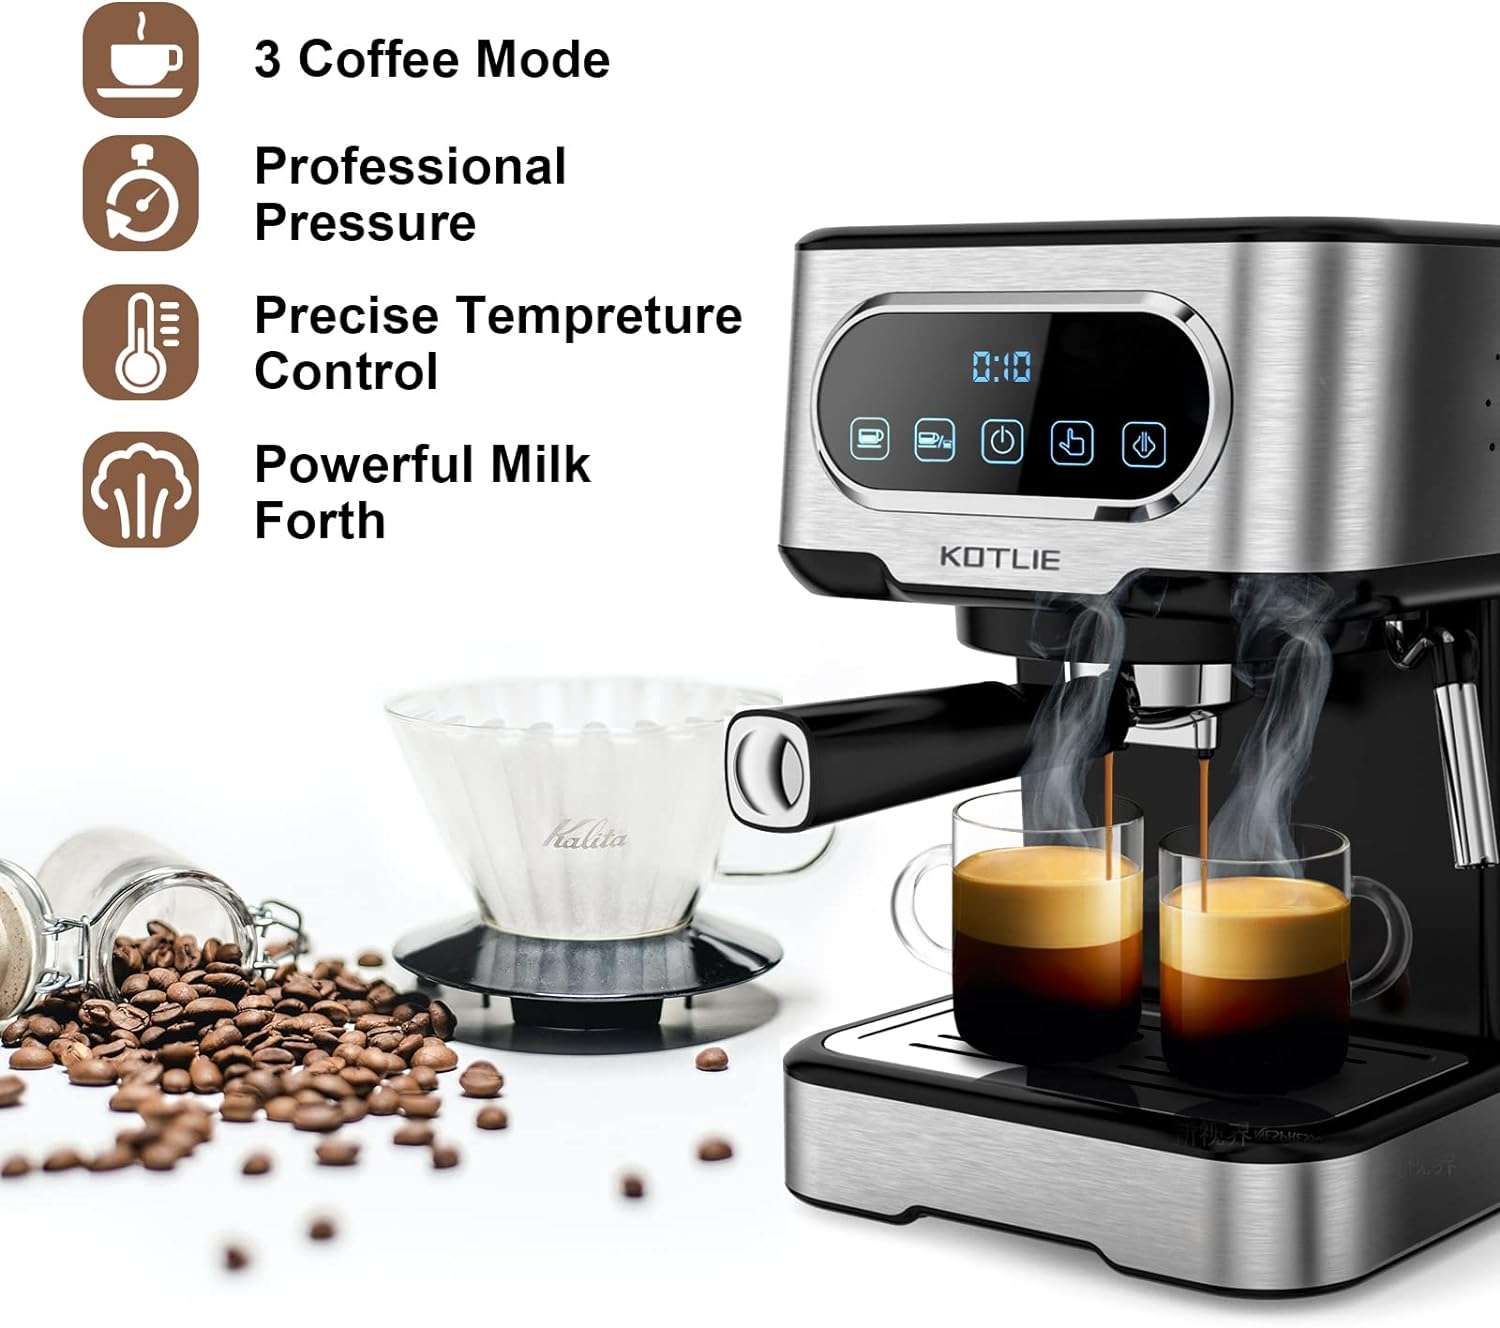 caffe-espresso-cappuccino-come-bar-questa-macchinetta-50-pannello